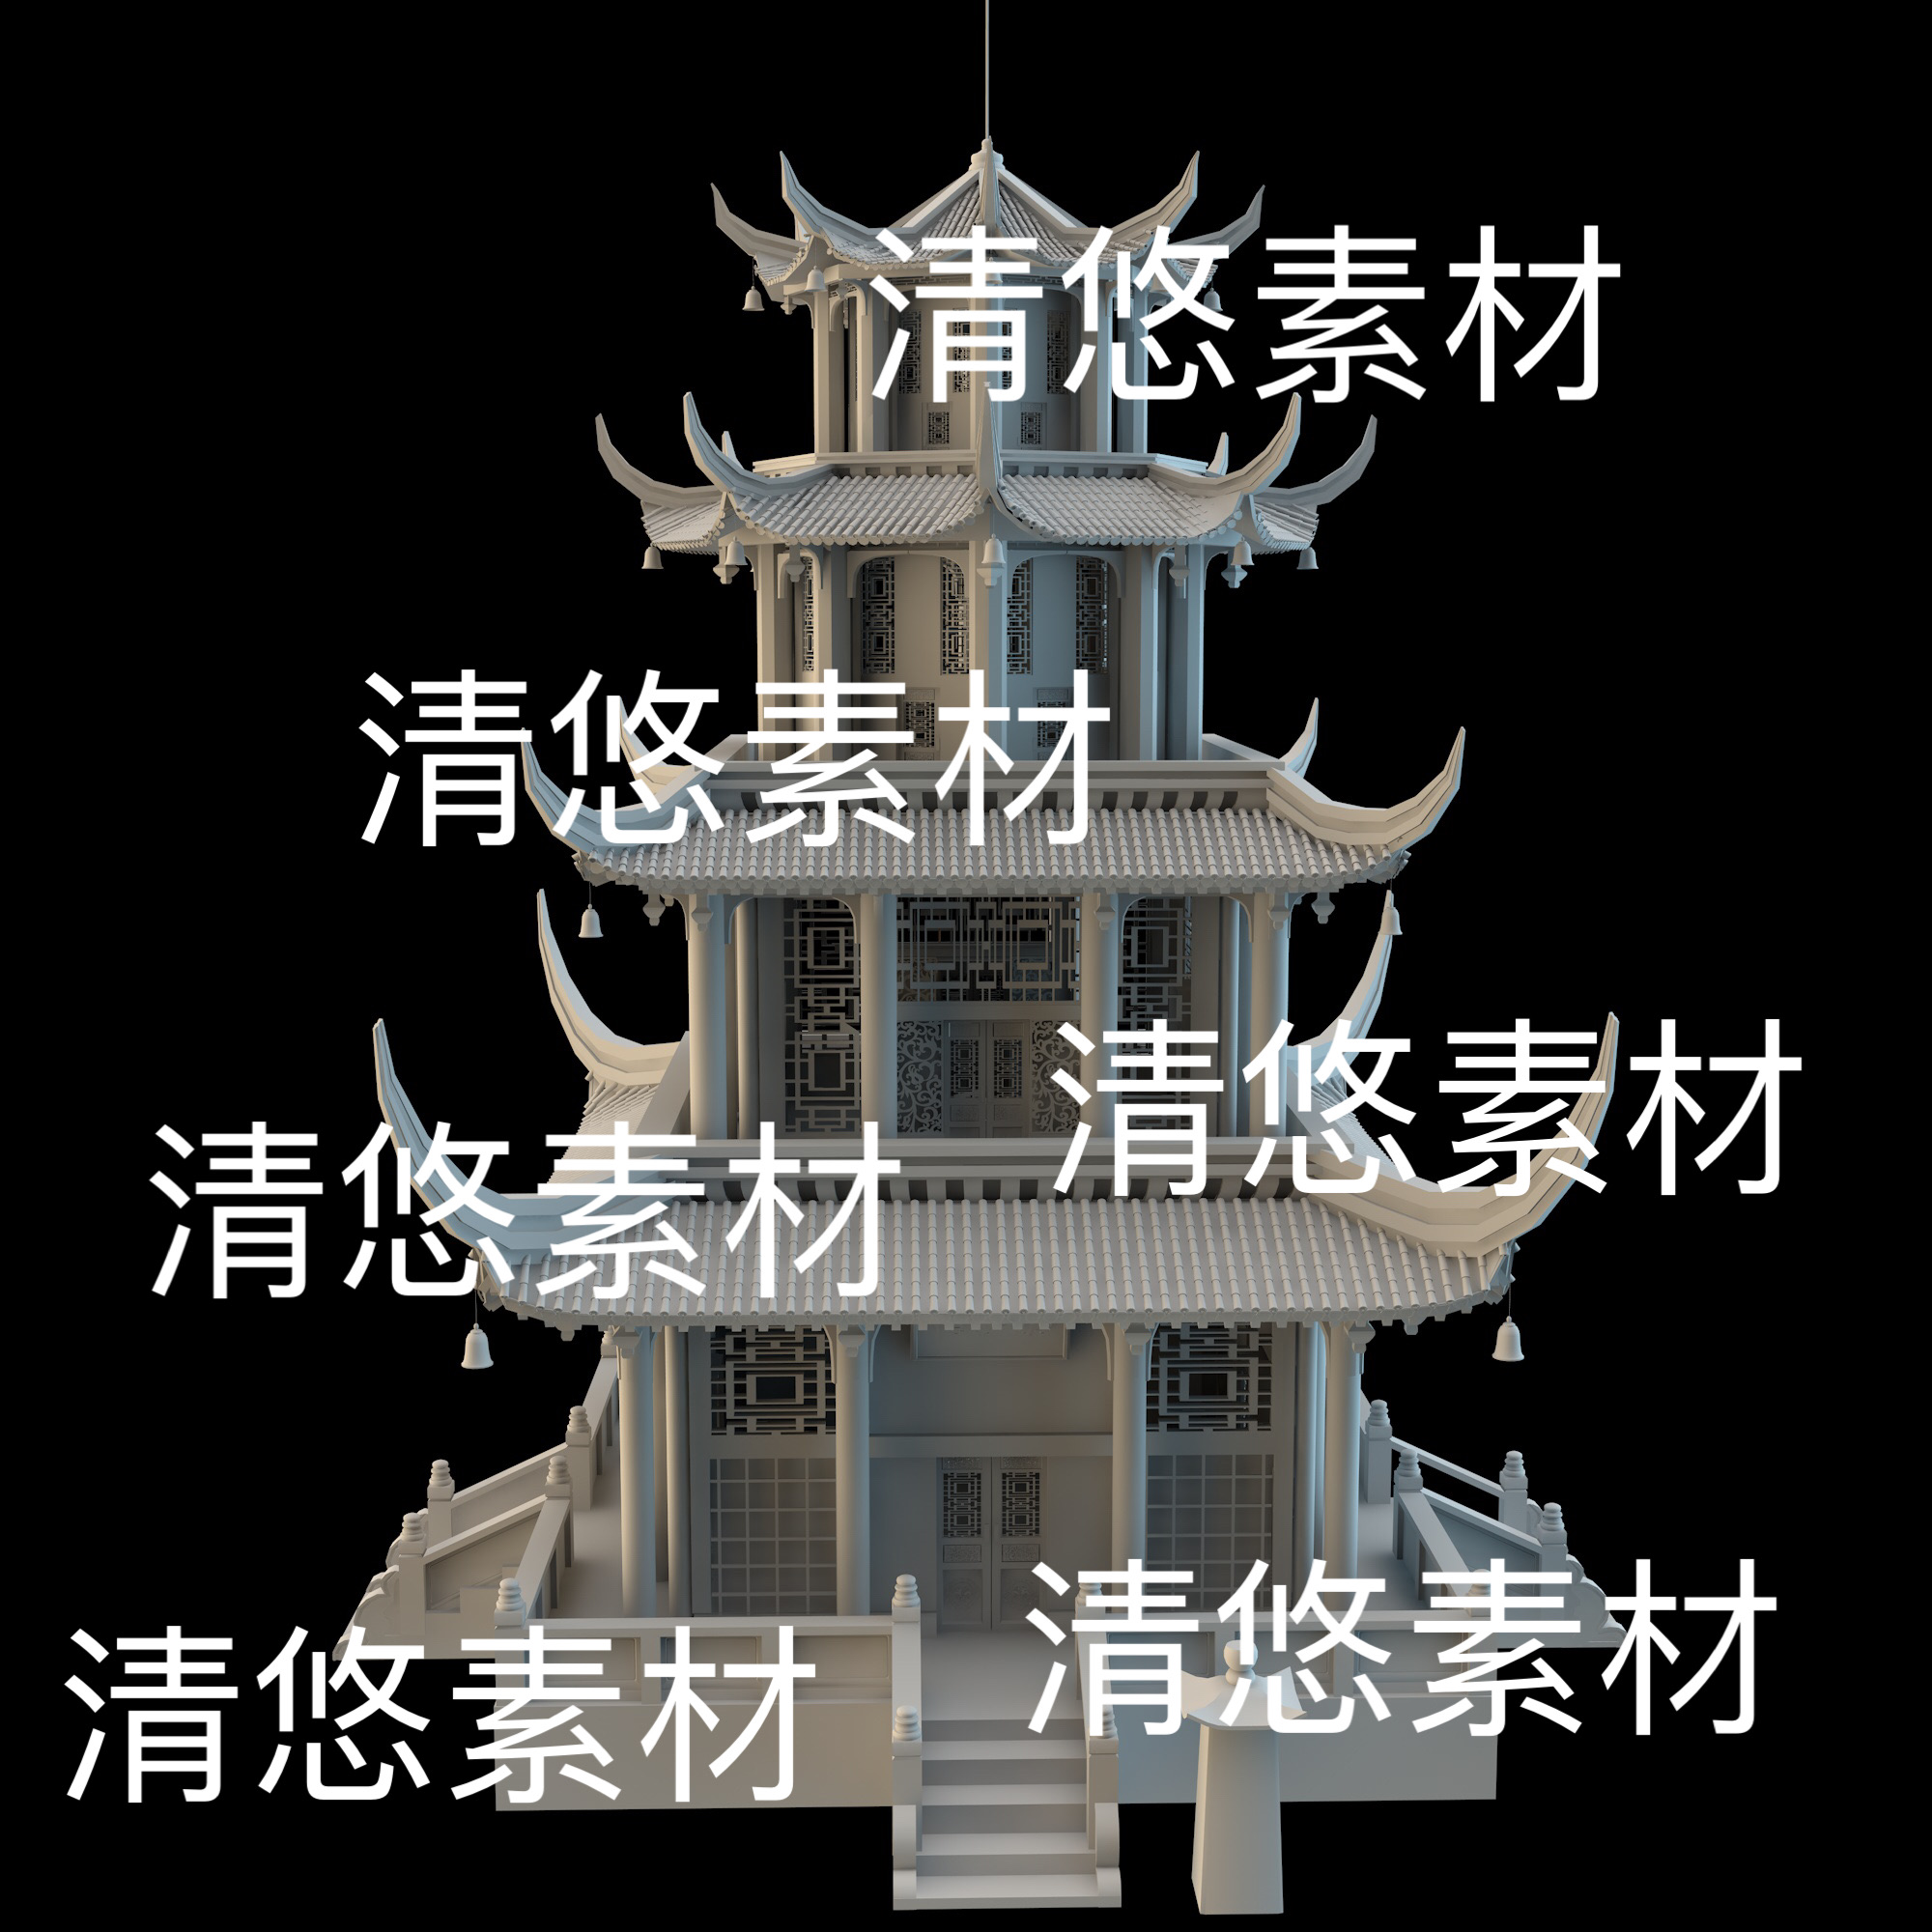 c4d fbx obj格式成都望江楼中国风古建筑塔楼模型文件 非实物D862